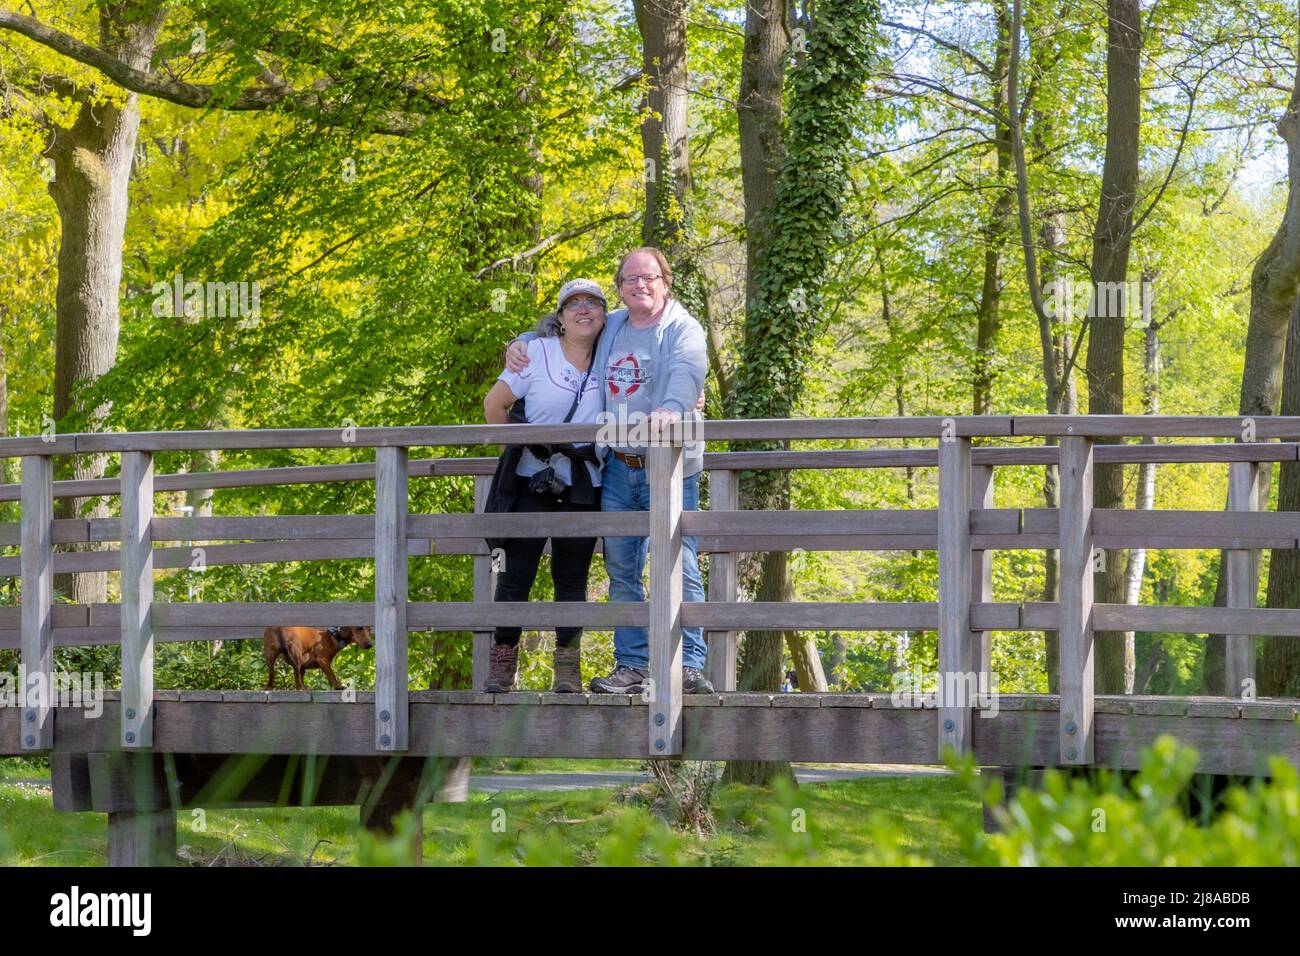 Wanderer reifes Paar lächelnd und glücklich auf einer Holzbrücke mit ihrem Dackel, Blick auf die Kamera, üppig grüne Bäume im Hintergrund, sonnigen Frühling Stockfoto